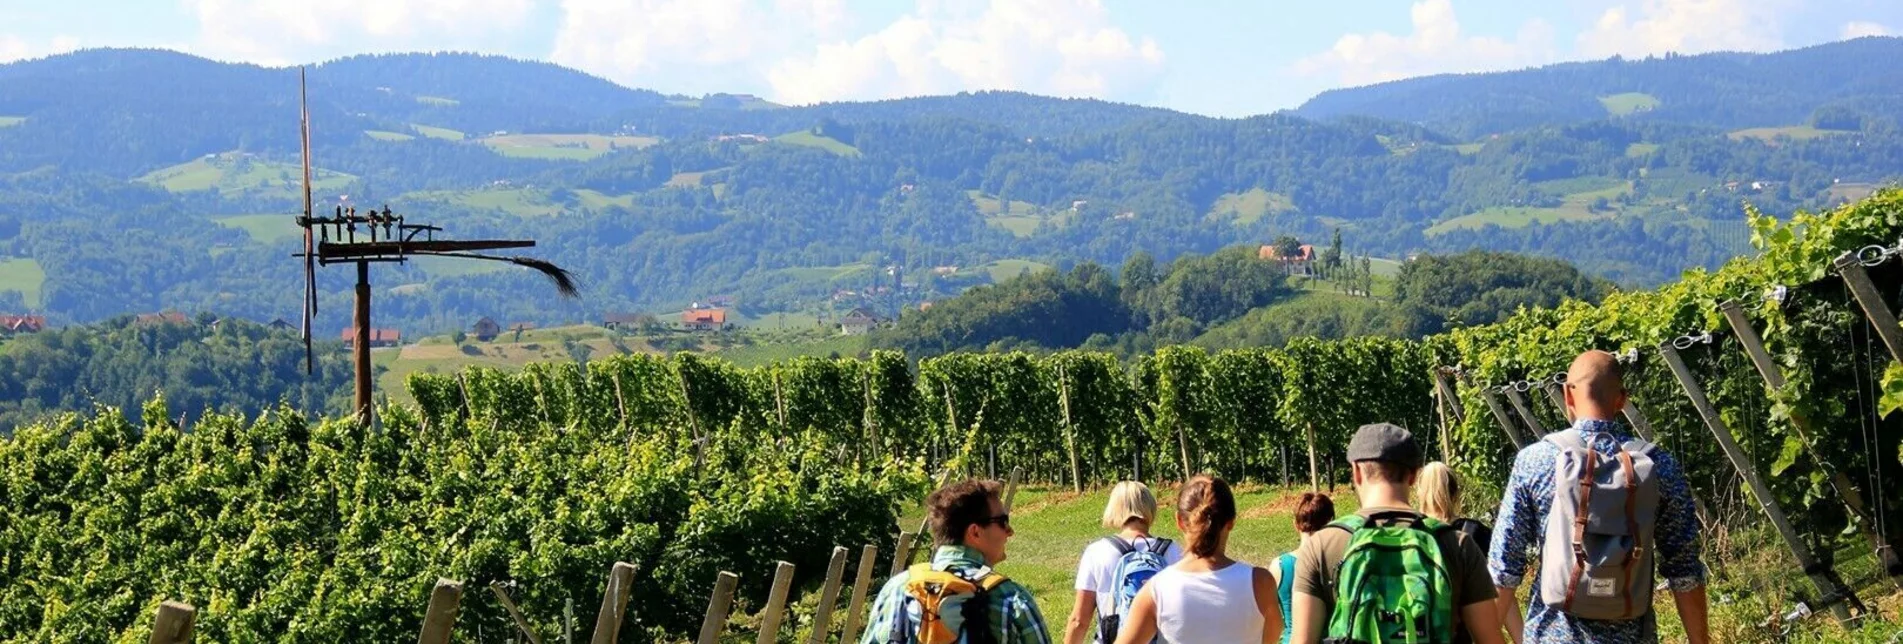 Wanderung Kulinarische Weinbergwanderung – Tour 15 lt. WK „Von der Alm zum Wein“ - Touren-Impression #1 | © Südsteiermark